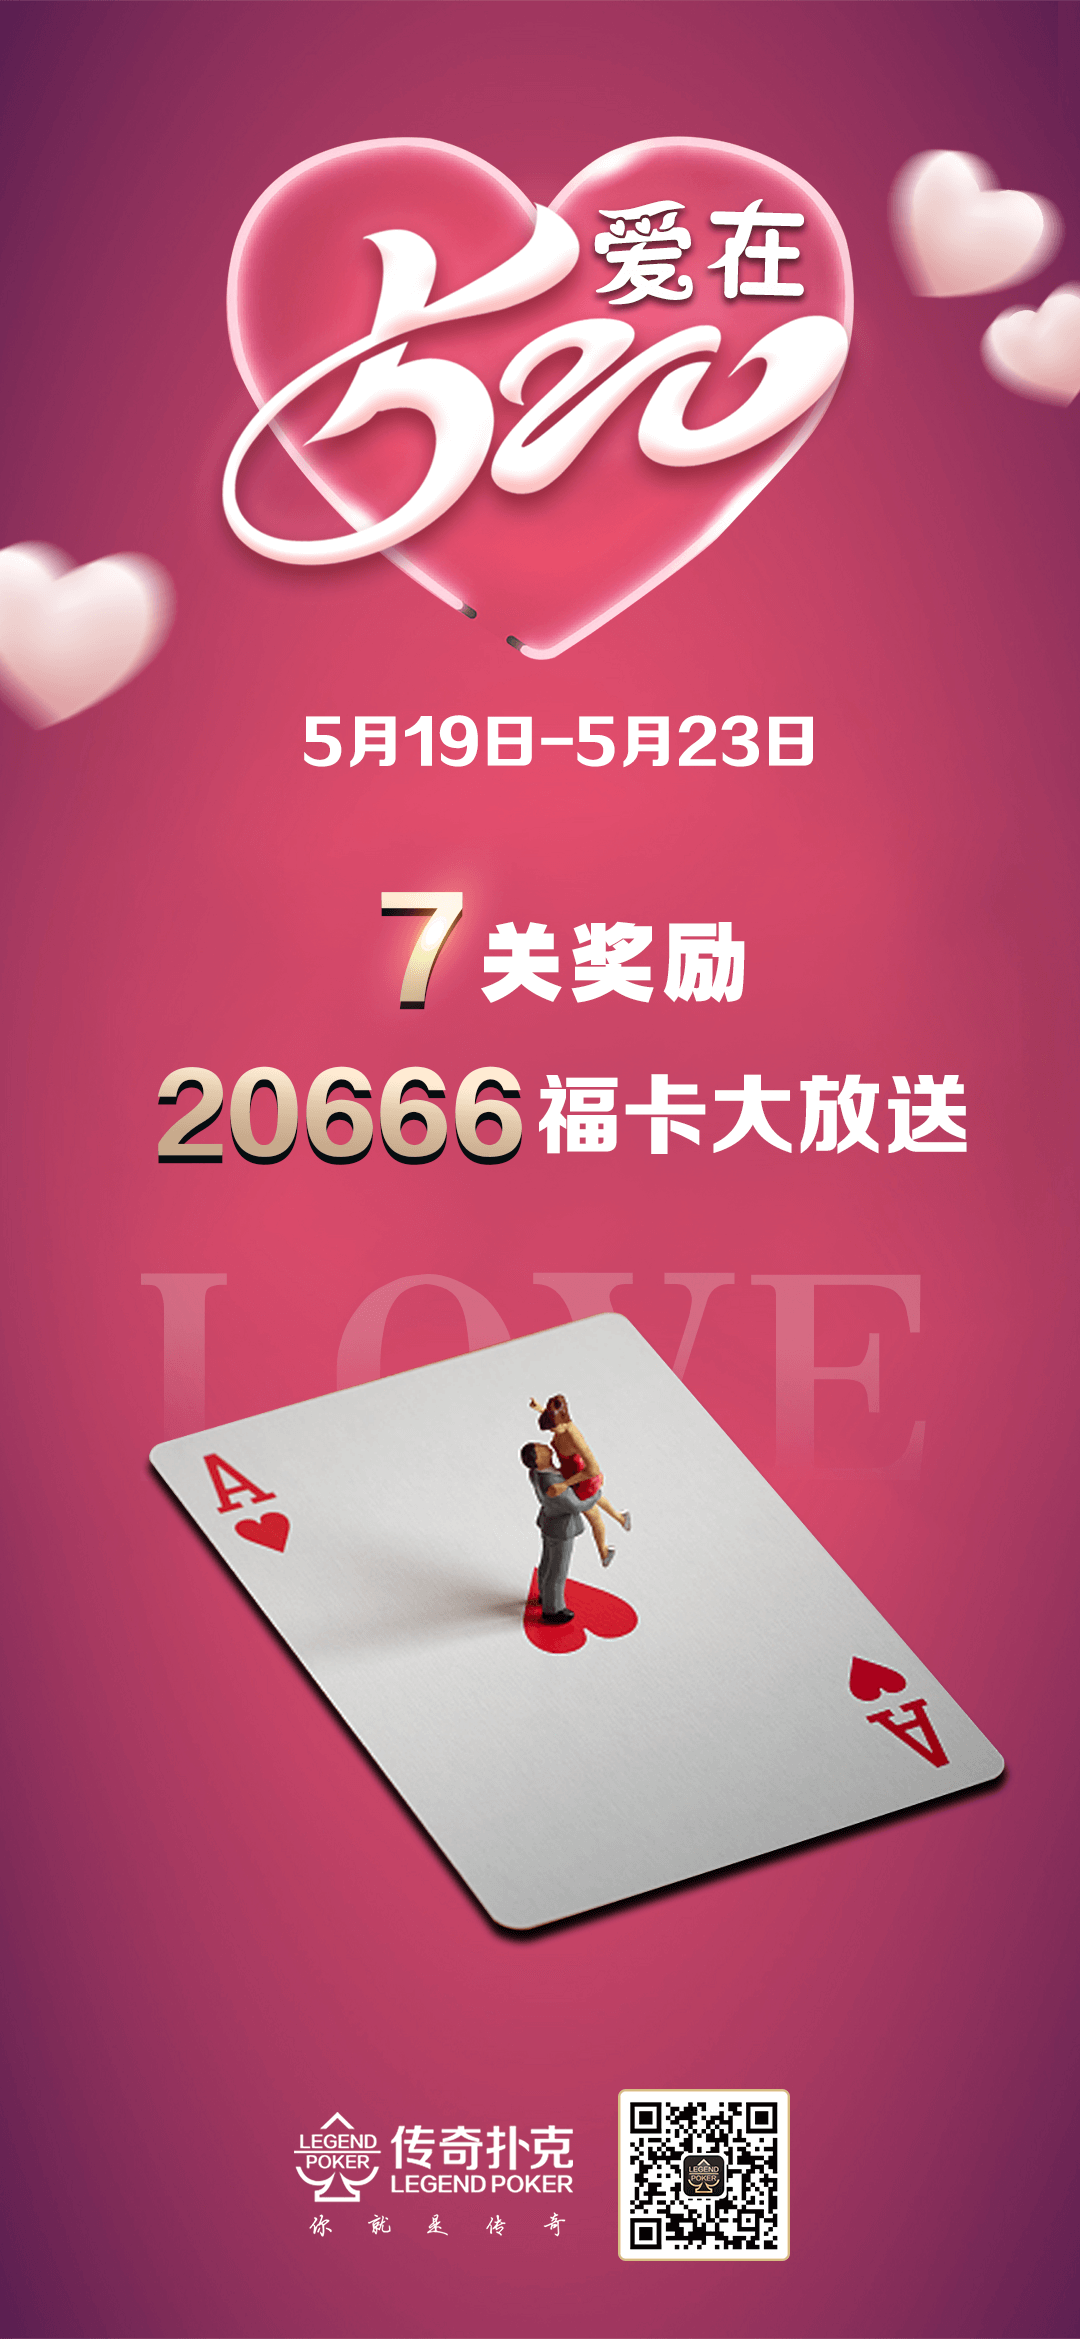 传奇扑克APP爱在520活动20666福卡大放送